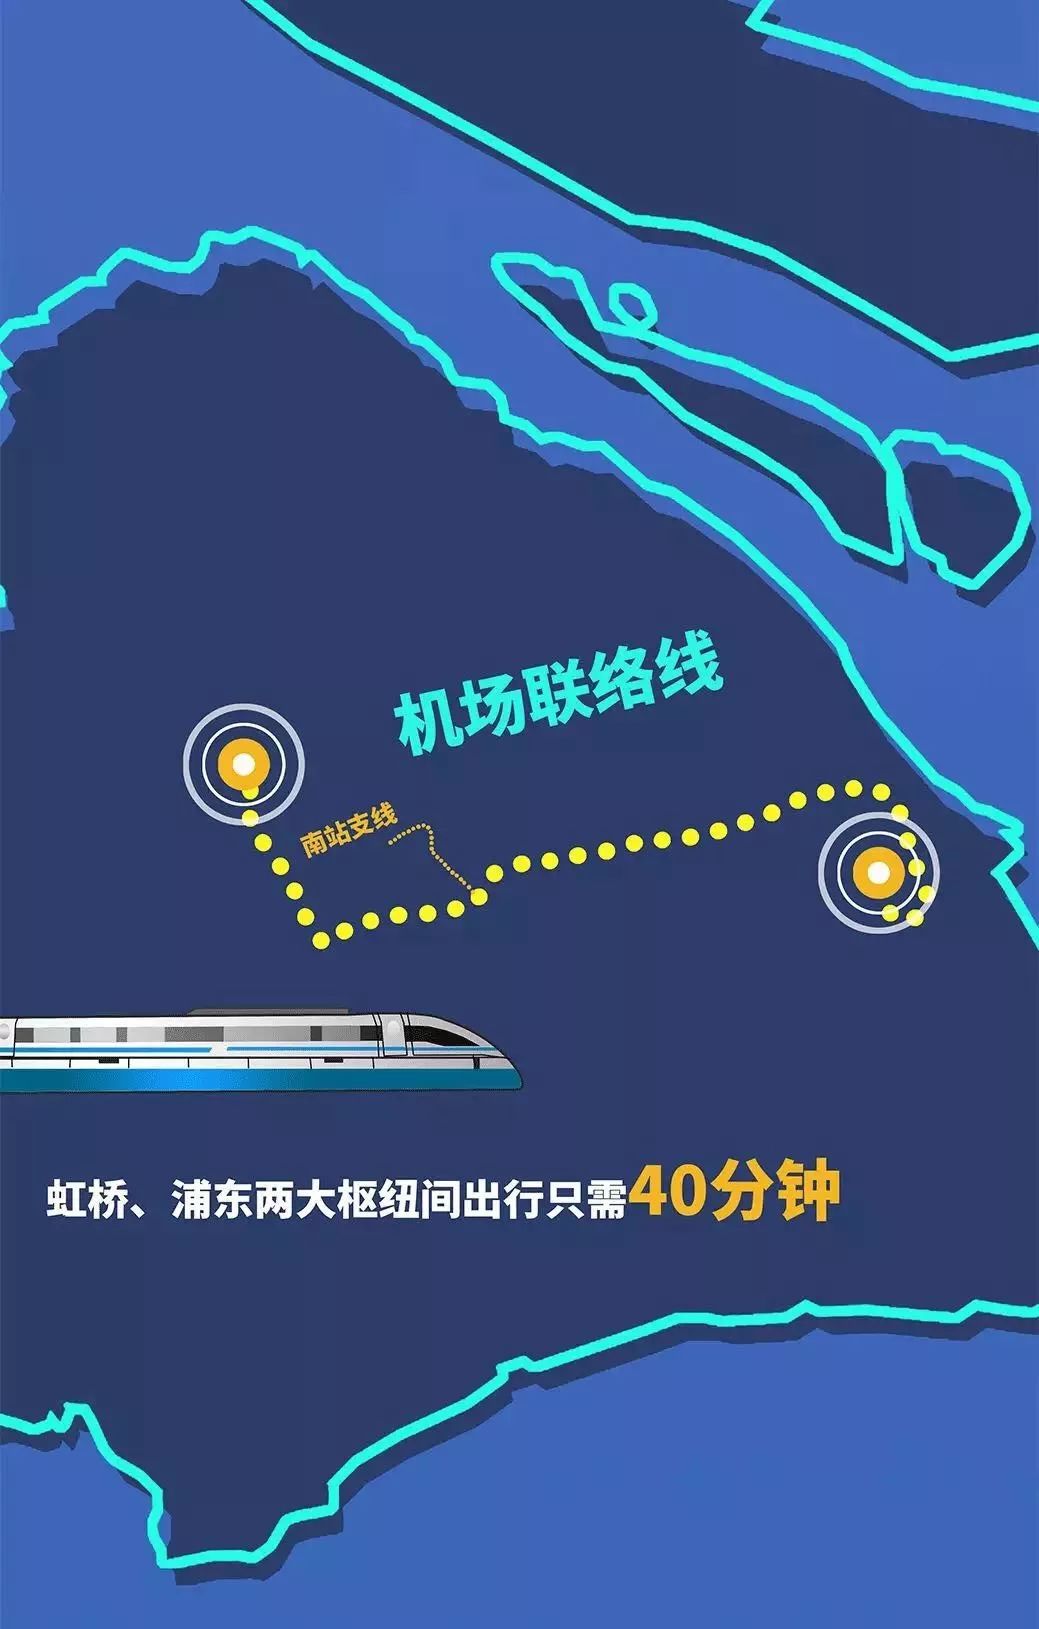 浦东虹桥仅40分钟!上海机场联络线全面开工 可与多条轨交换乘